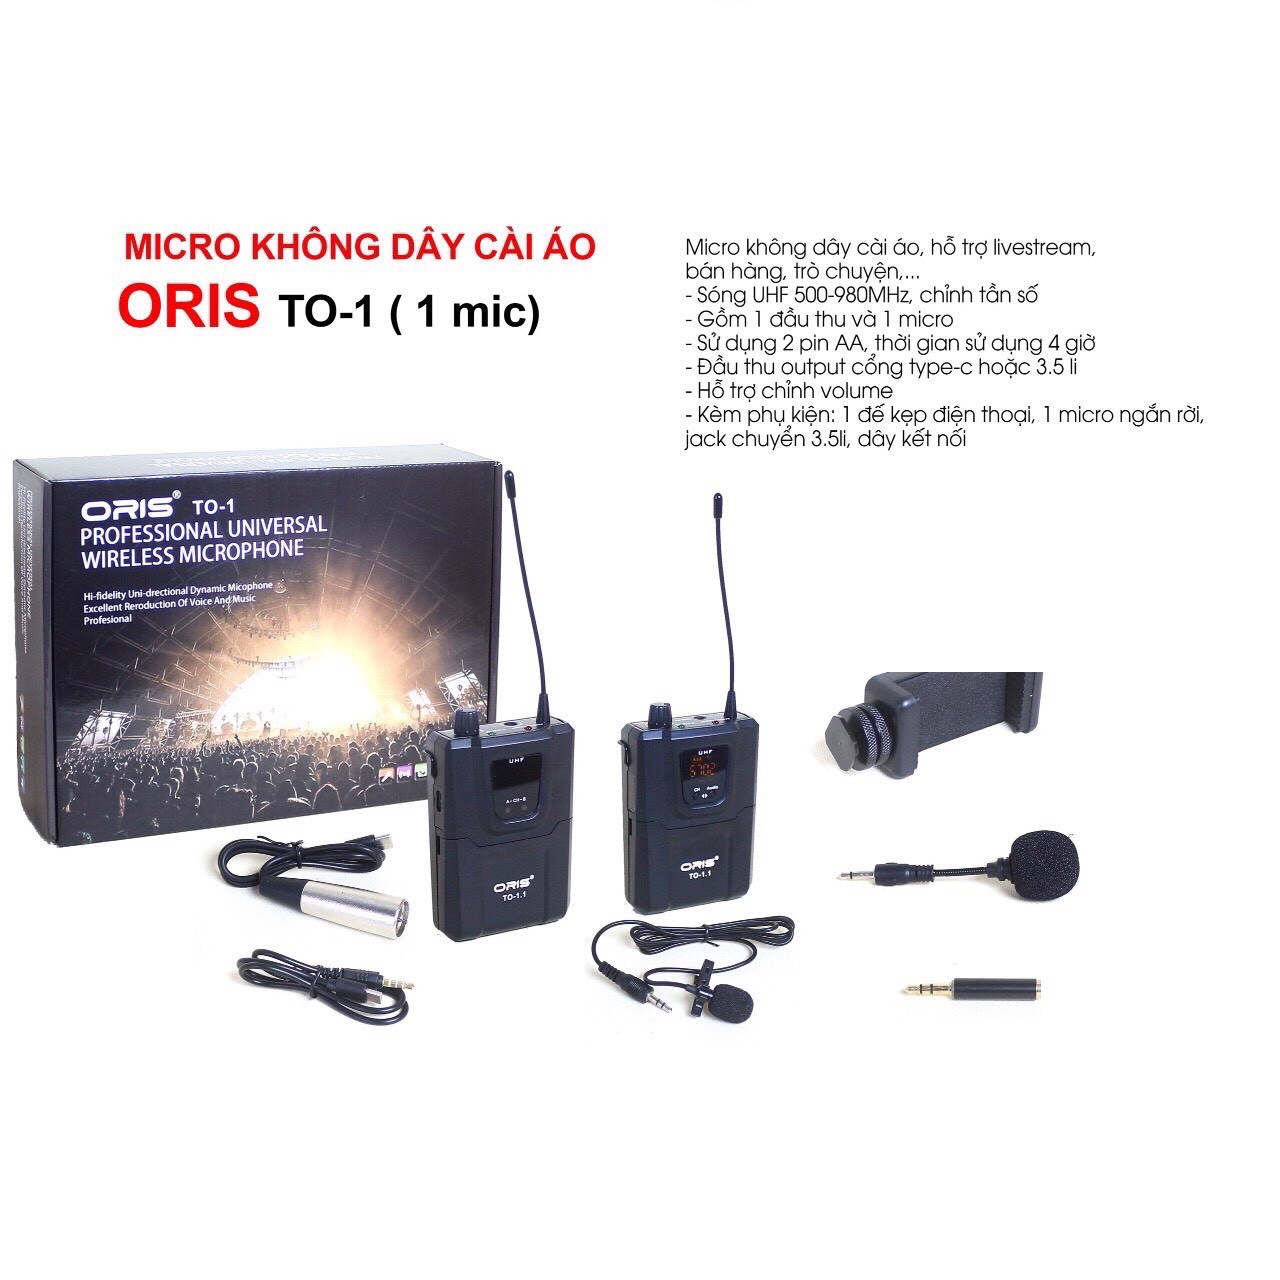 Micro không dây cài áo oris TO-1 ( 1 mic) hỗ trợ livestream, bán hàng, lọc tạp âm tốt, âm thanh trung thực